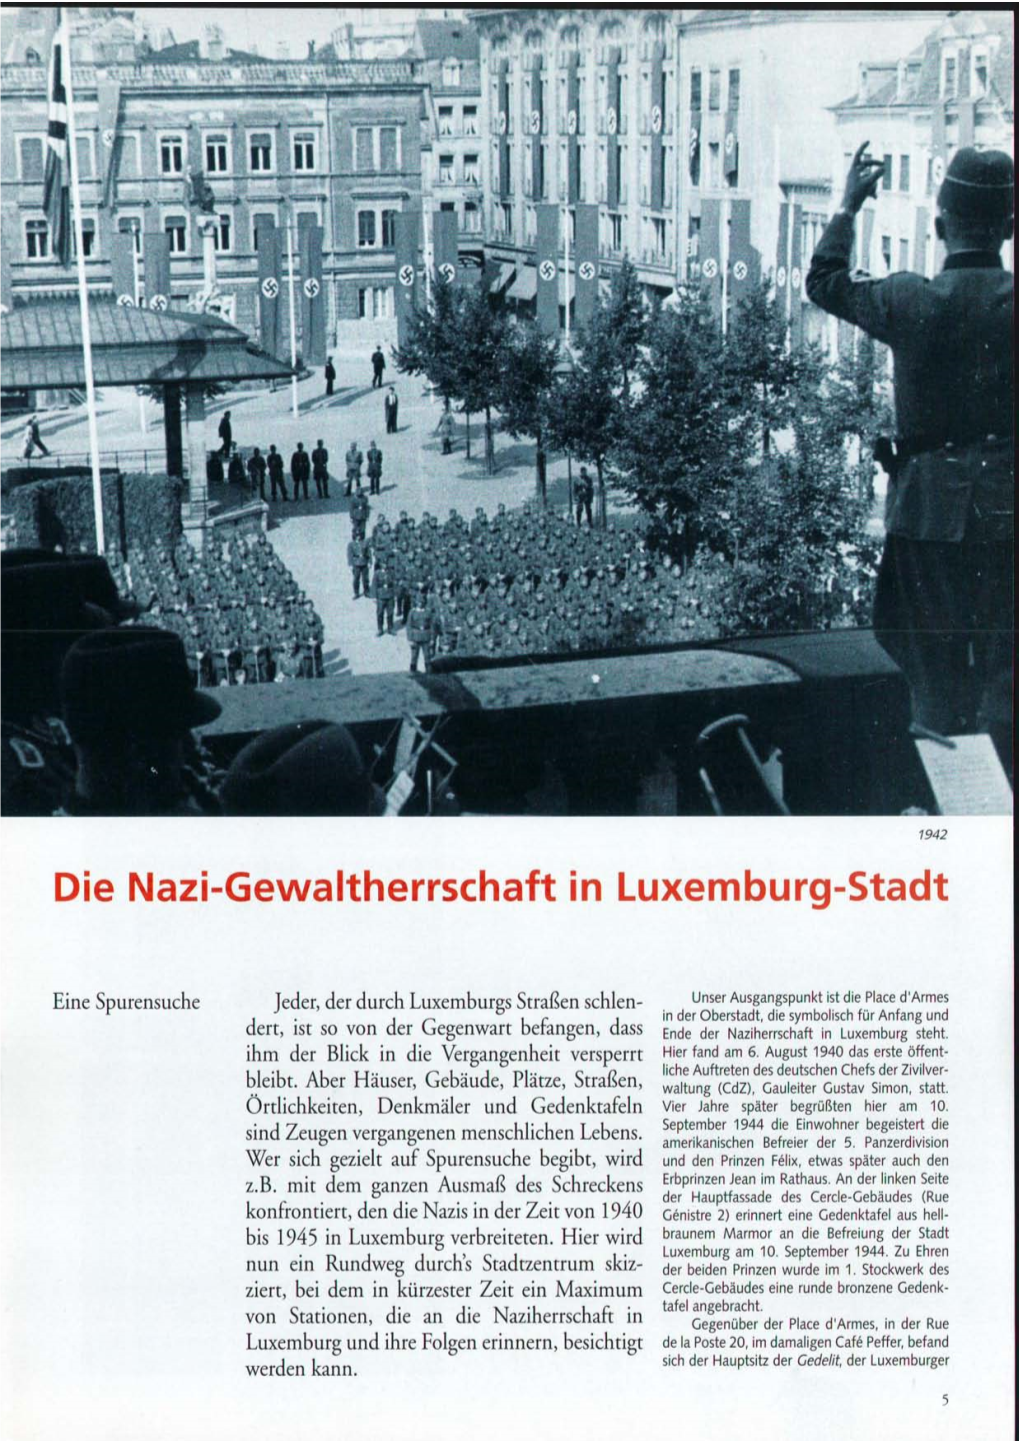 Die Nazi-Gewaltherrschaft in Luxemburg-Stadt